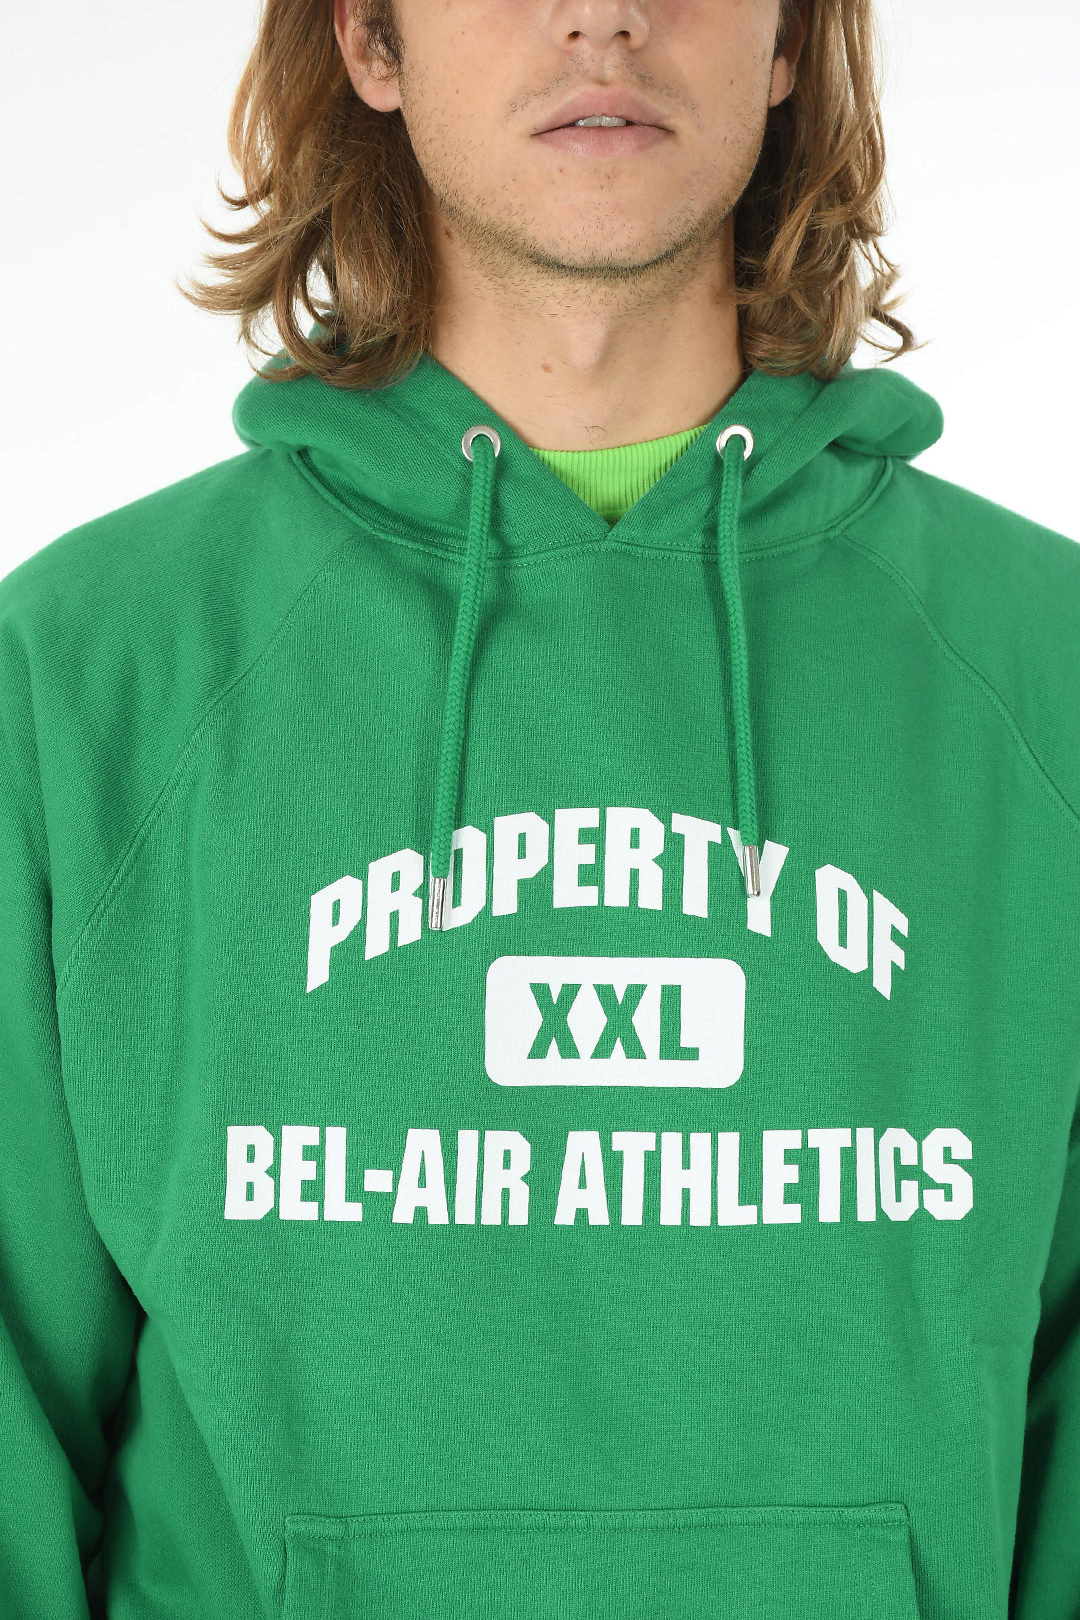 Bel-Air Athletics